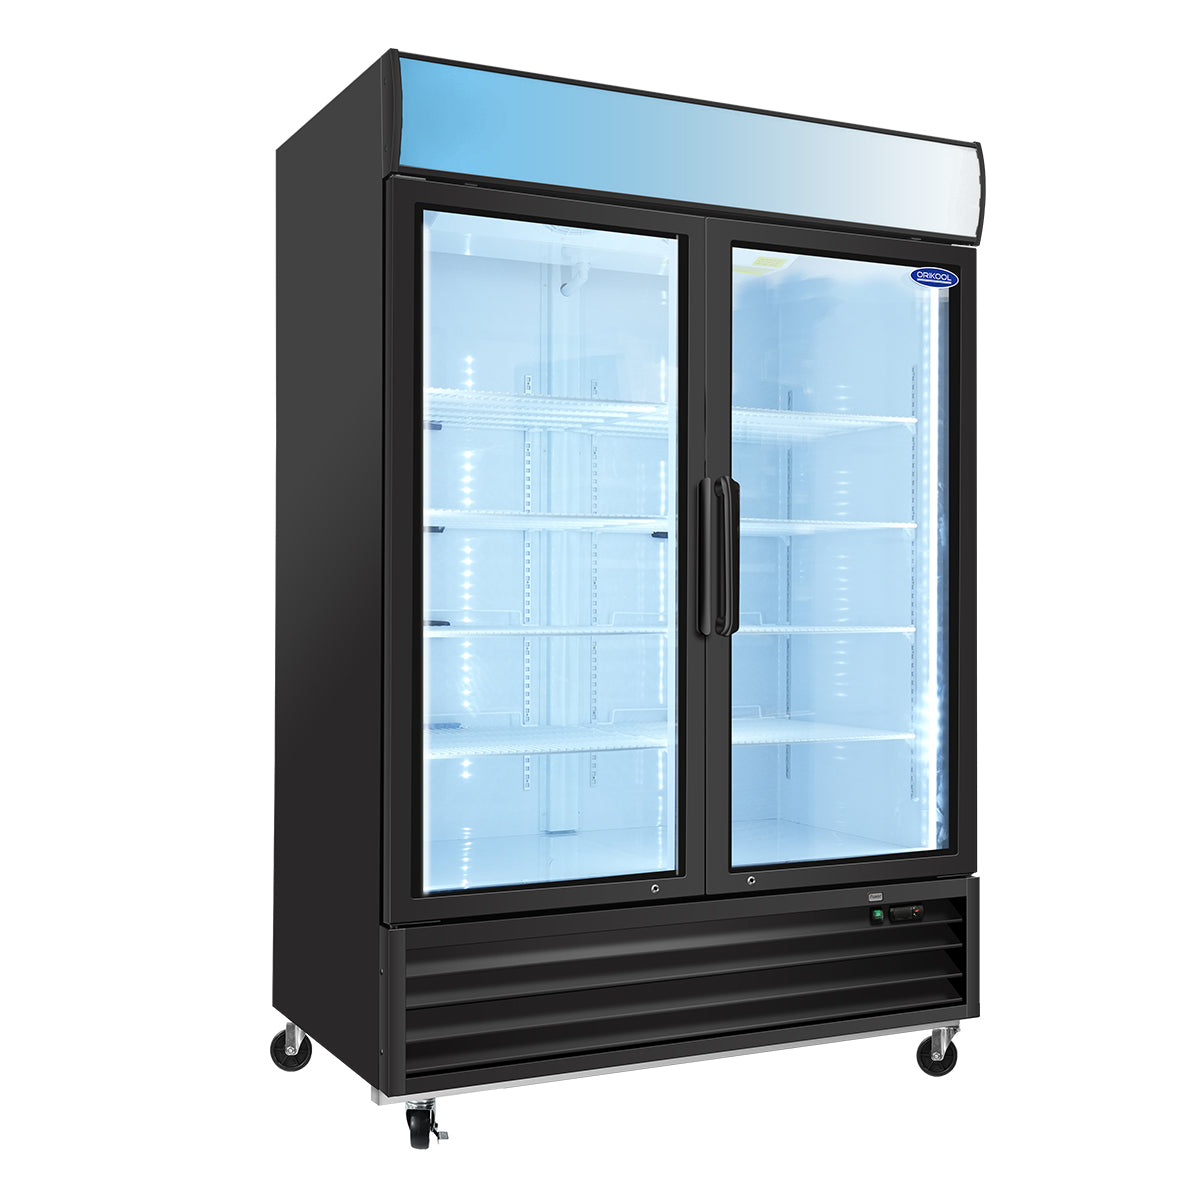 ORIKOOL SC1390F 54" Double Swing Glass Door Merchandising Refrigerator 44.7 cu.ft. Restaurant Refrigerators with LED Top Panel ETL DOE Commercial Refrigerators